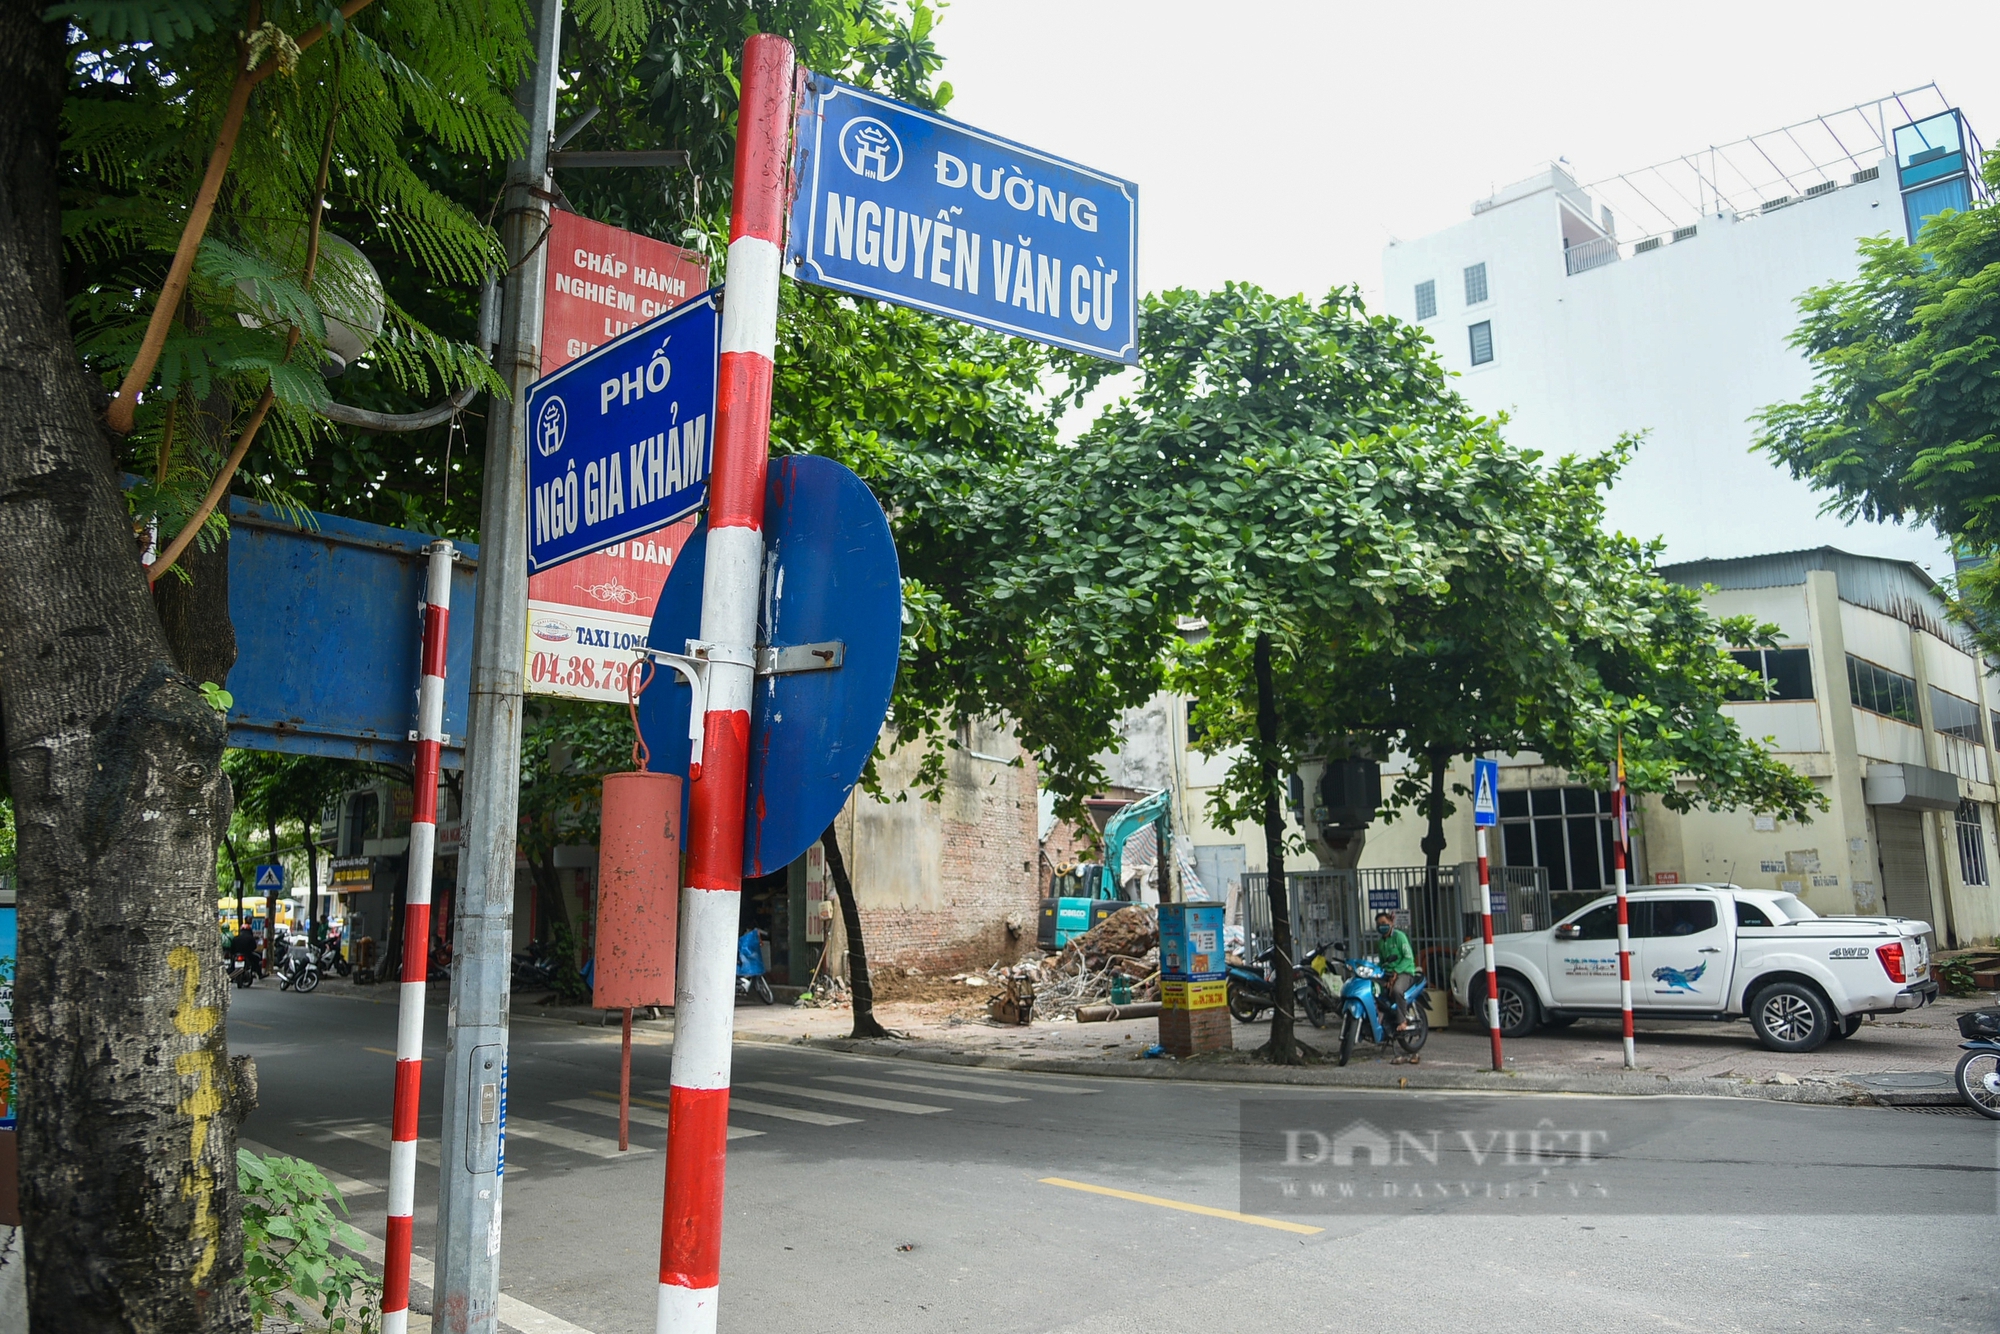 Hình ảnh 2 tuyến đường ở quận Long Biên chuẩn bị được đầu tư mở rộng lên 4 làn xe- Ảnh 4.